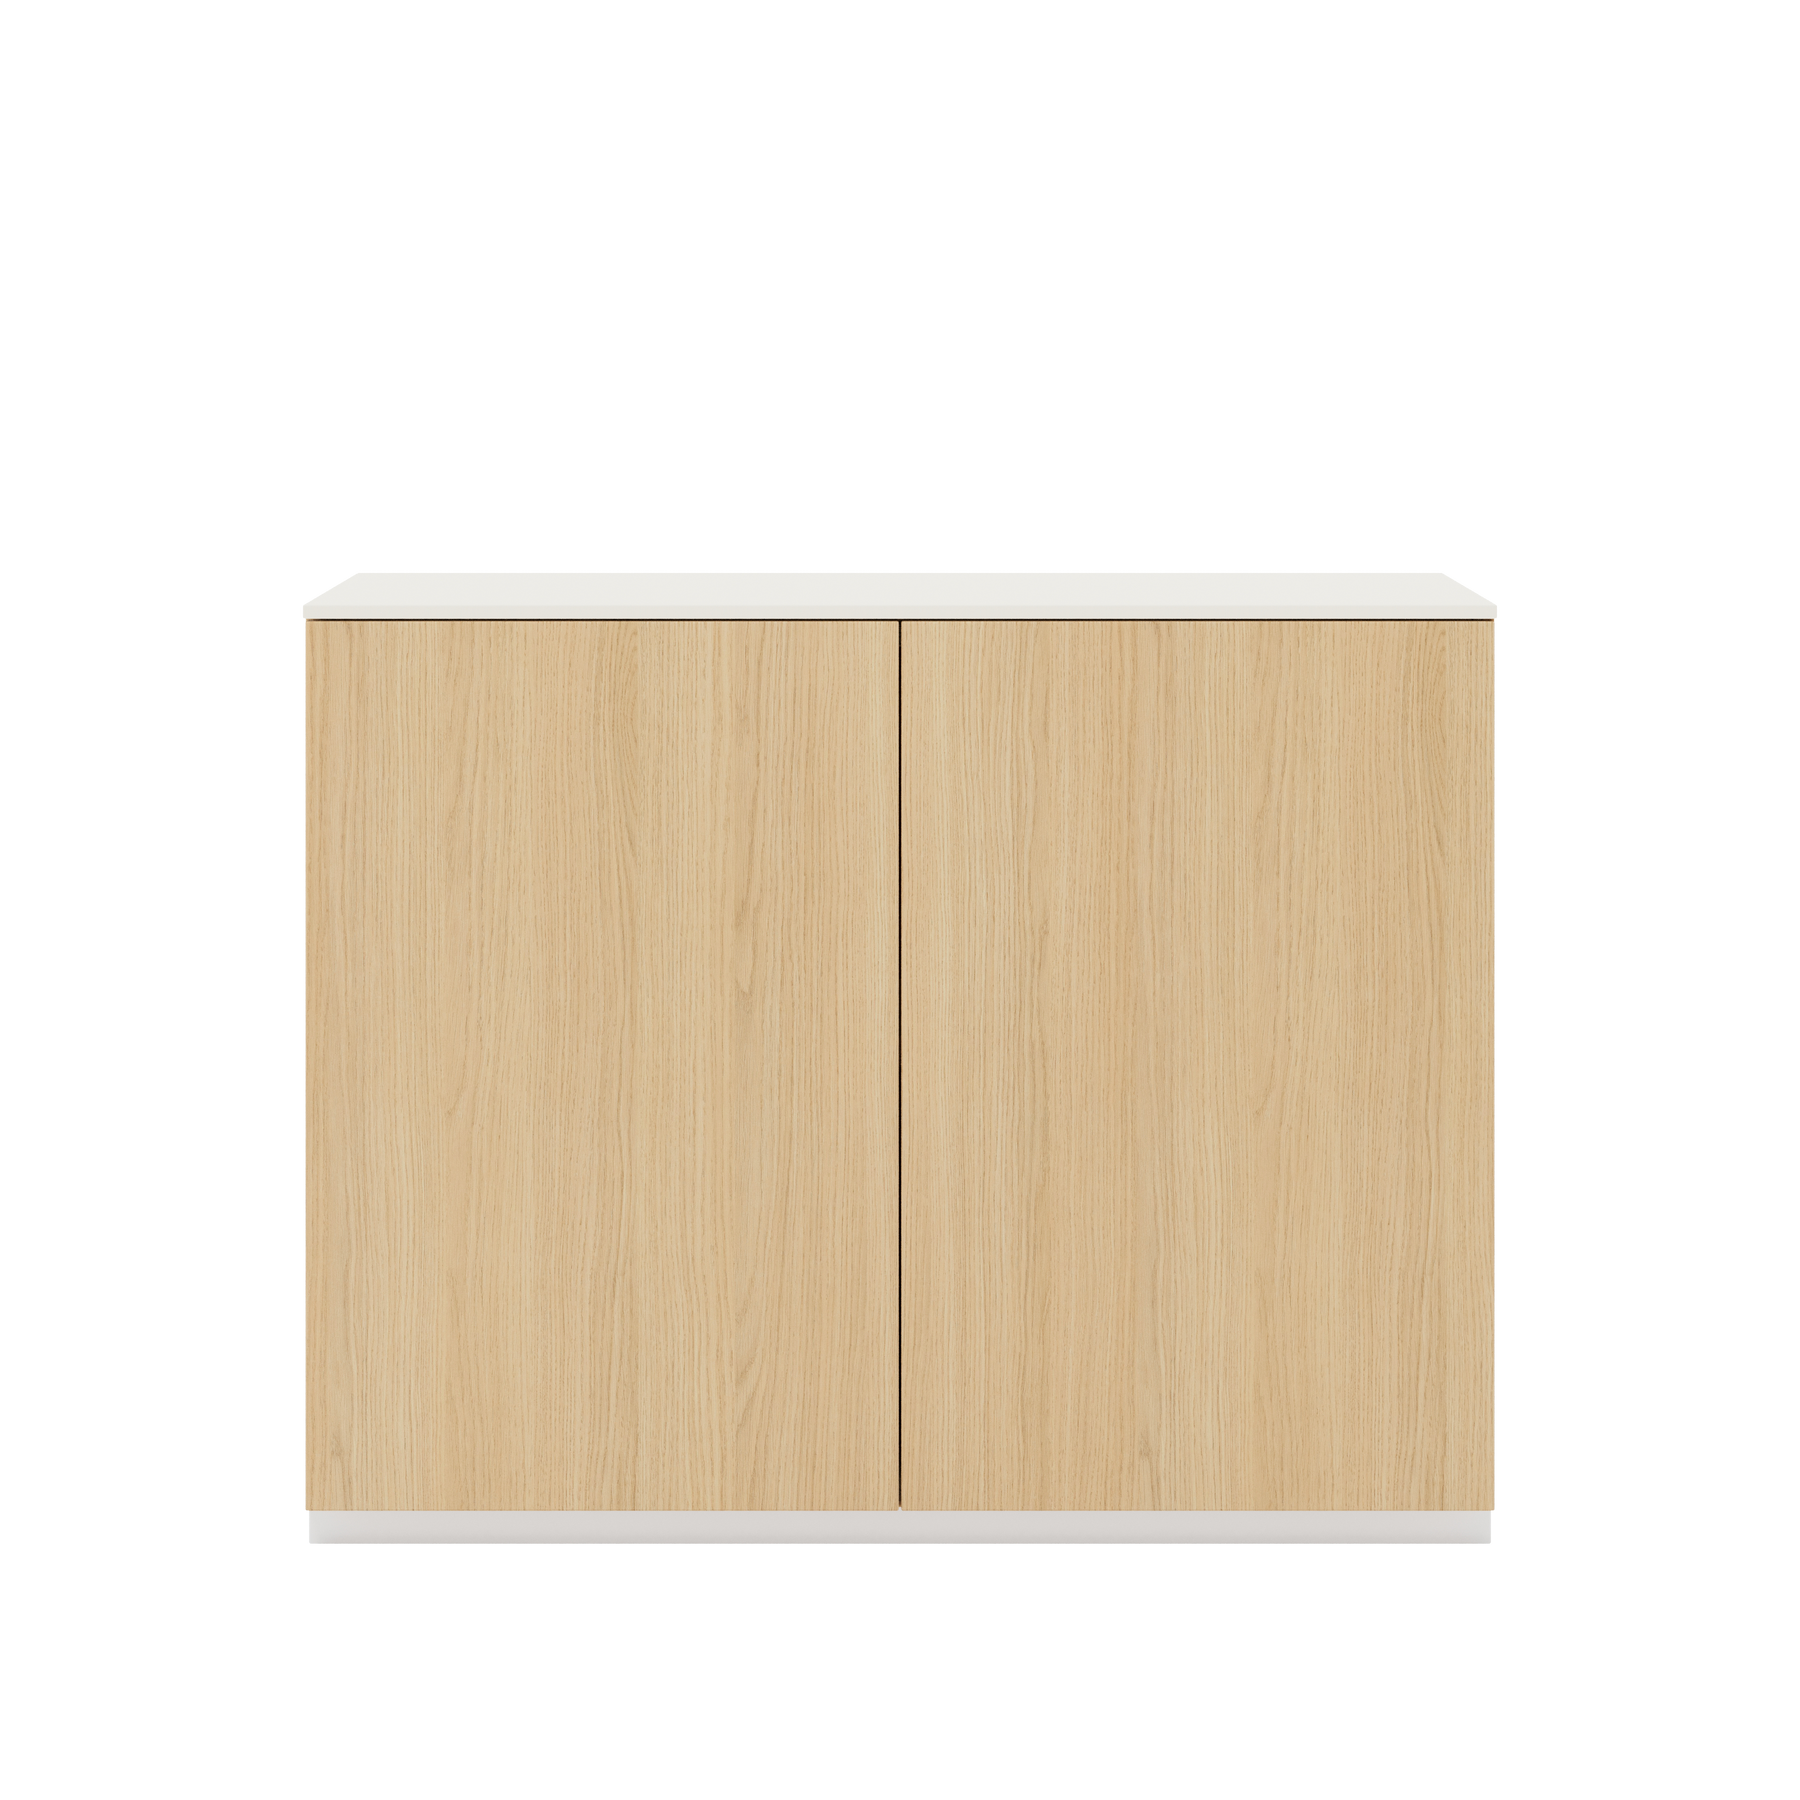 Vor weißem Hintergrund sieht man ein Sideboard aus Eichenholz. Die beiden Drehtüren haben keine Griffe. Auf dem Sideboard ist eine cremeweiße Abdeckplatte angebracht.